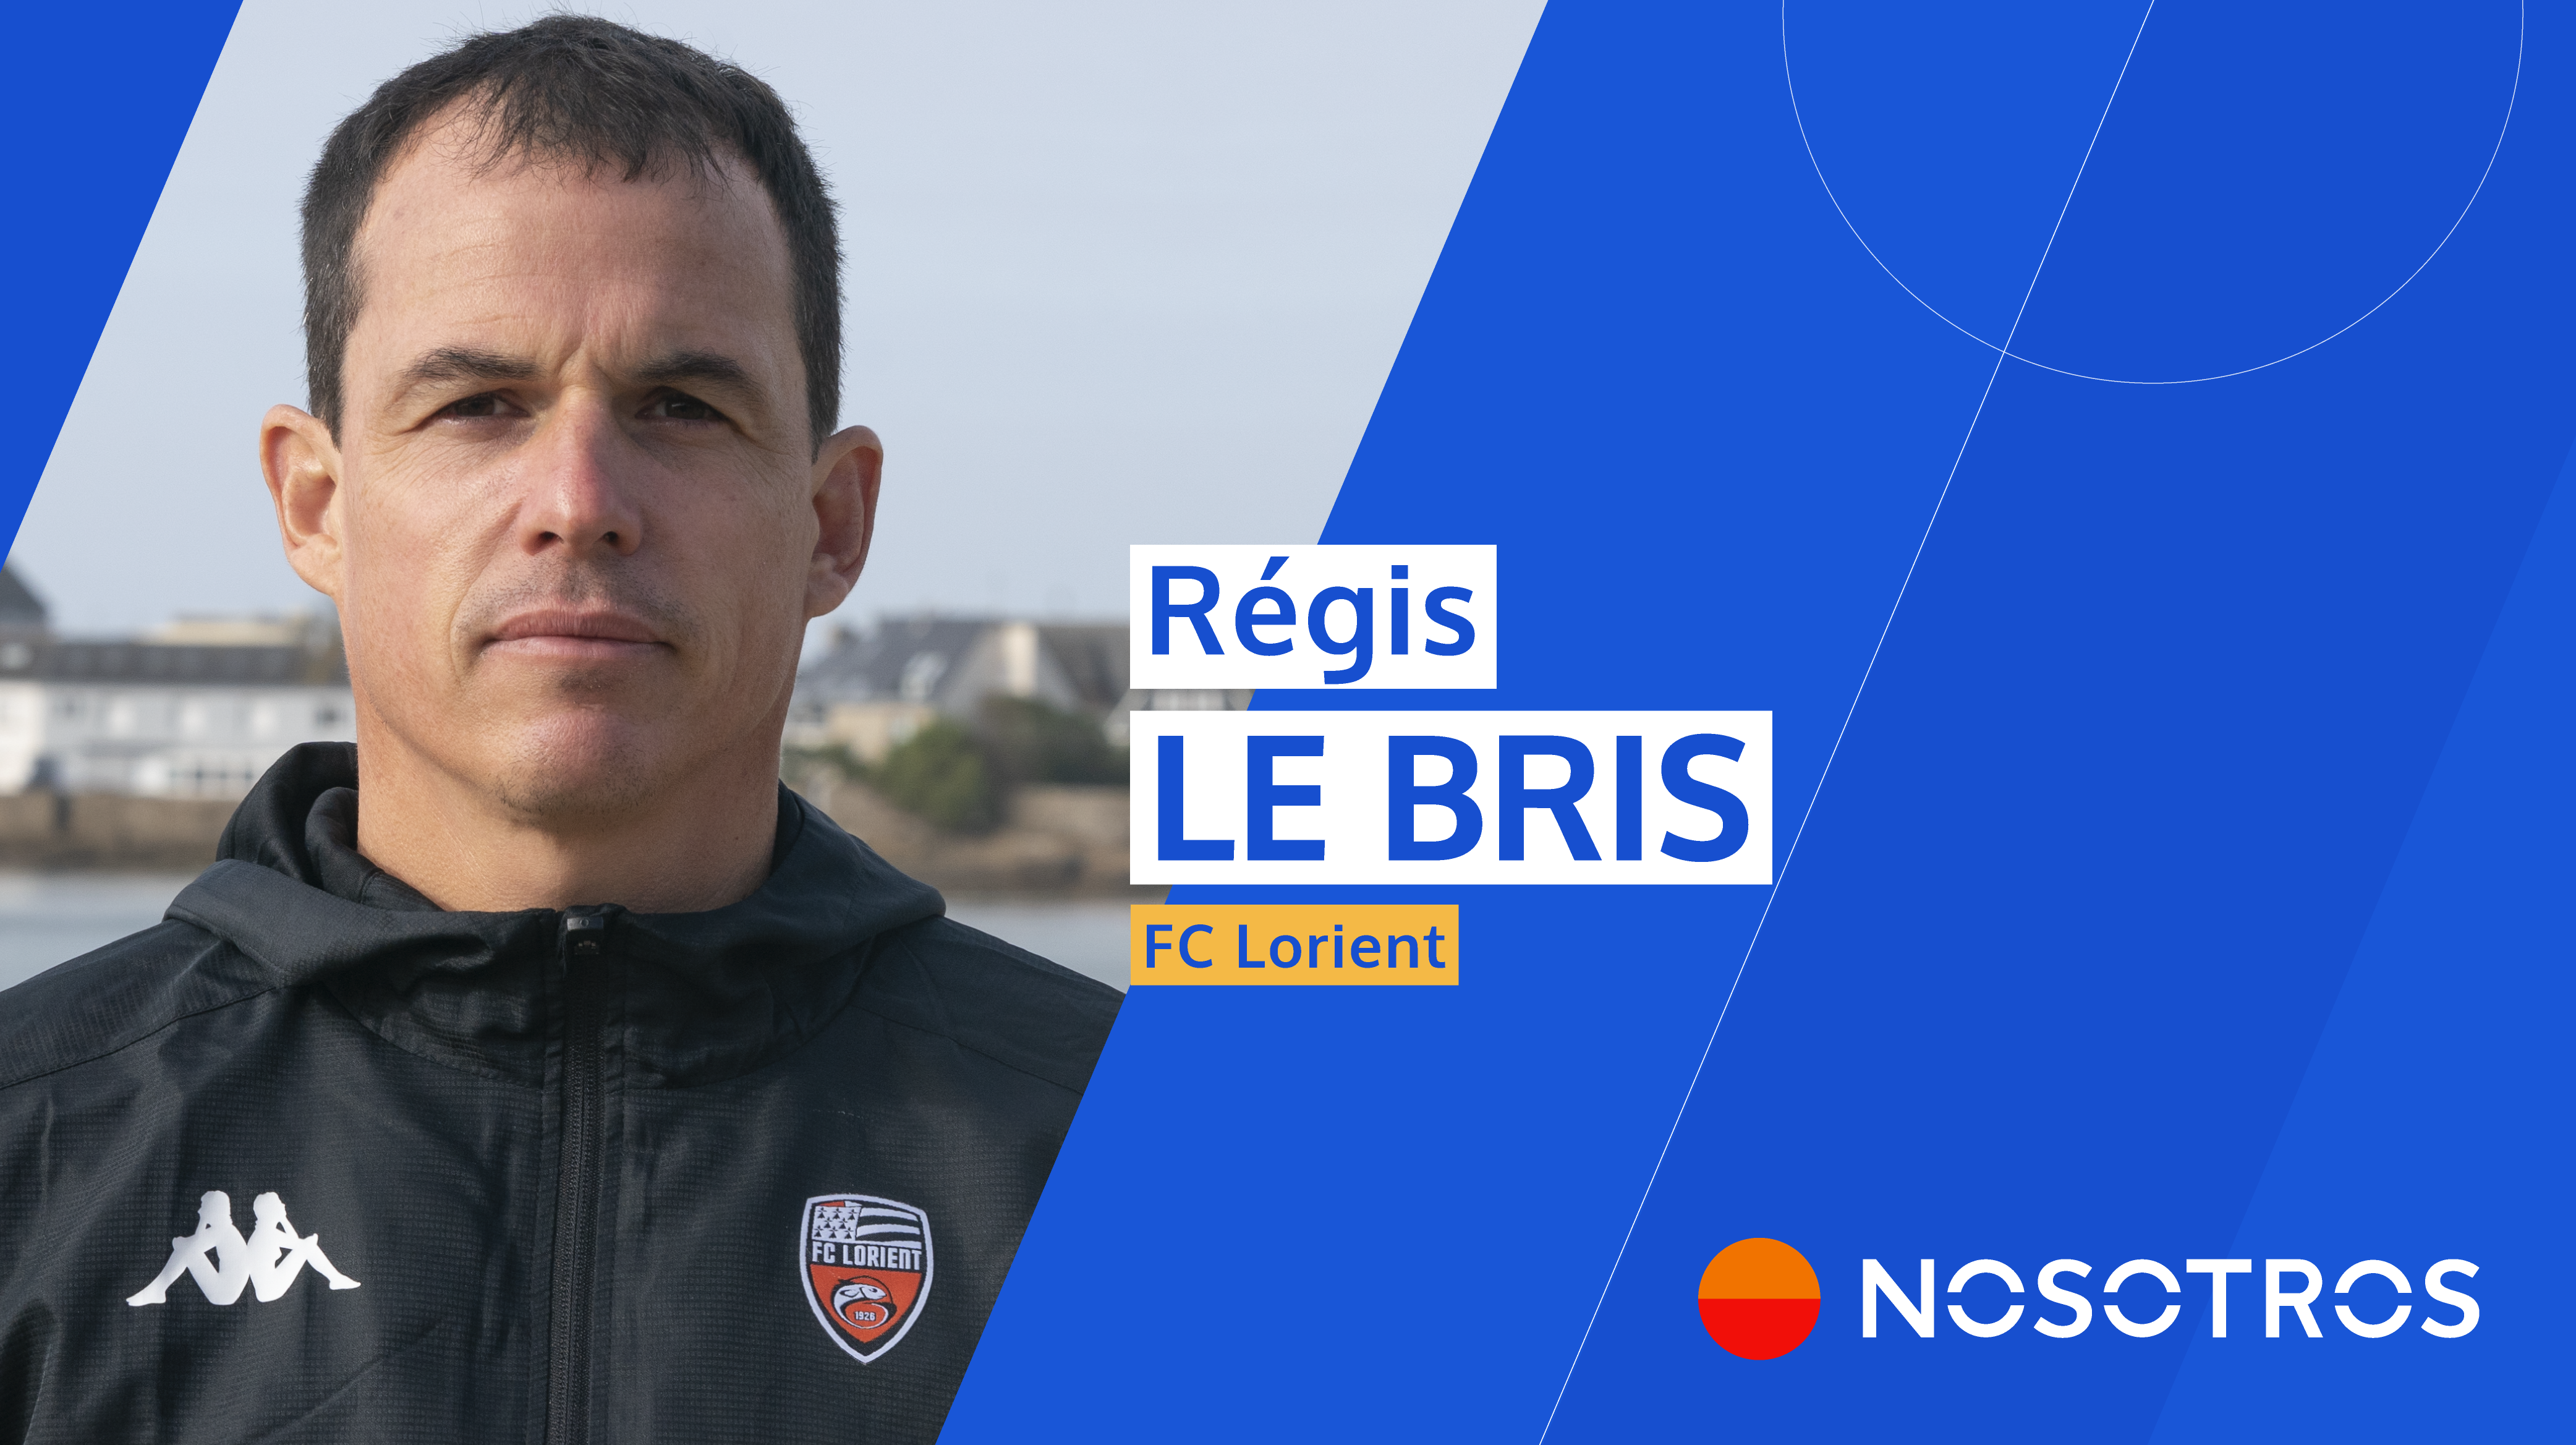 https://nosotrosxp.com/wp-content/uploads/2021/01/Regis_Le_Bris-FC-Lorient-NOSOTROS-Rect.png